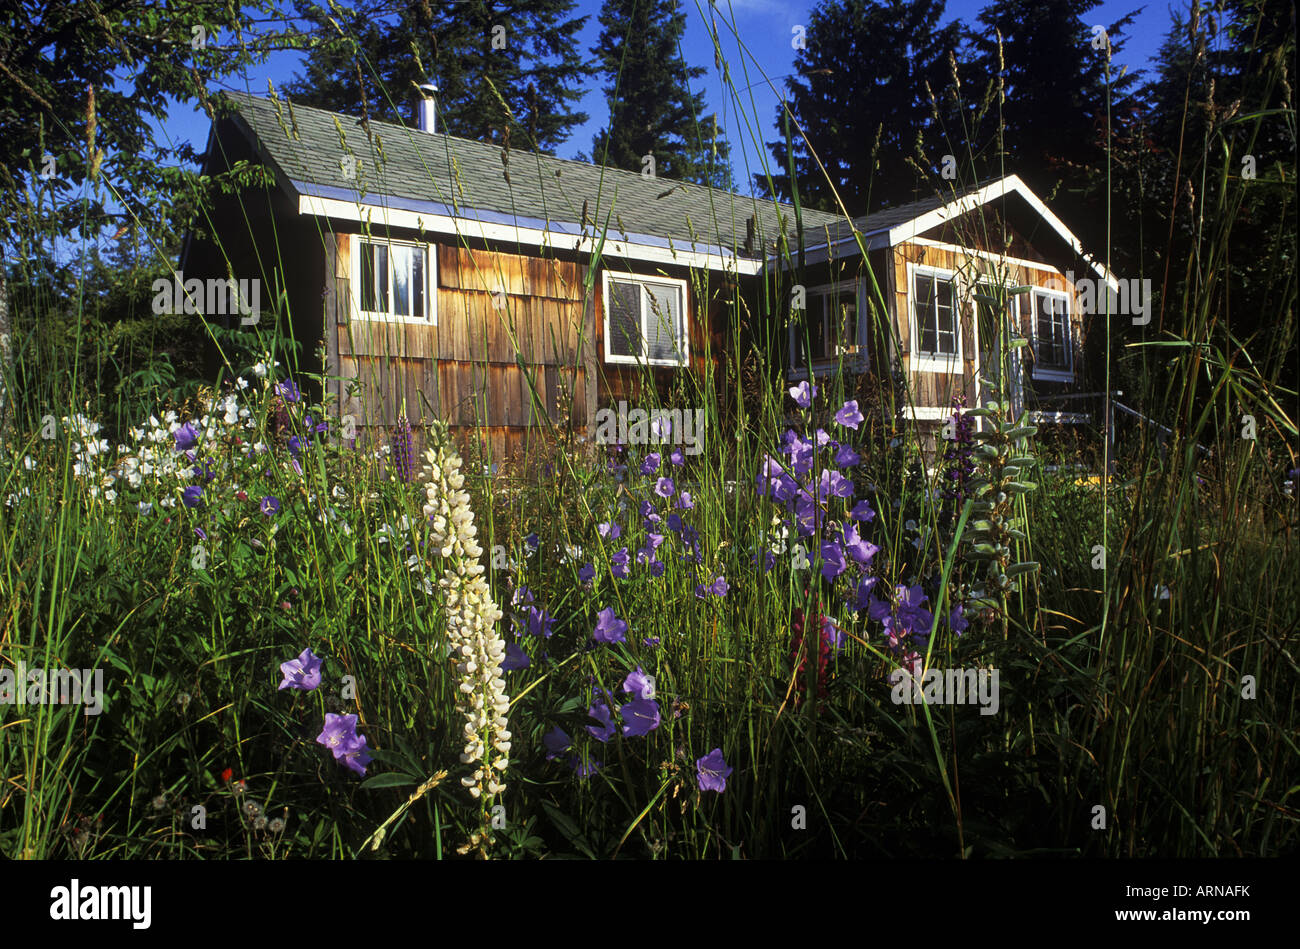 Vieux chalet rénové, l'internement des Japonais West Kootenays, New Denver, British Columbia, Canada. Banque D'Images